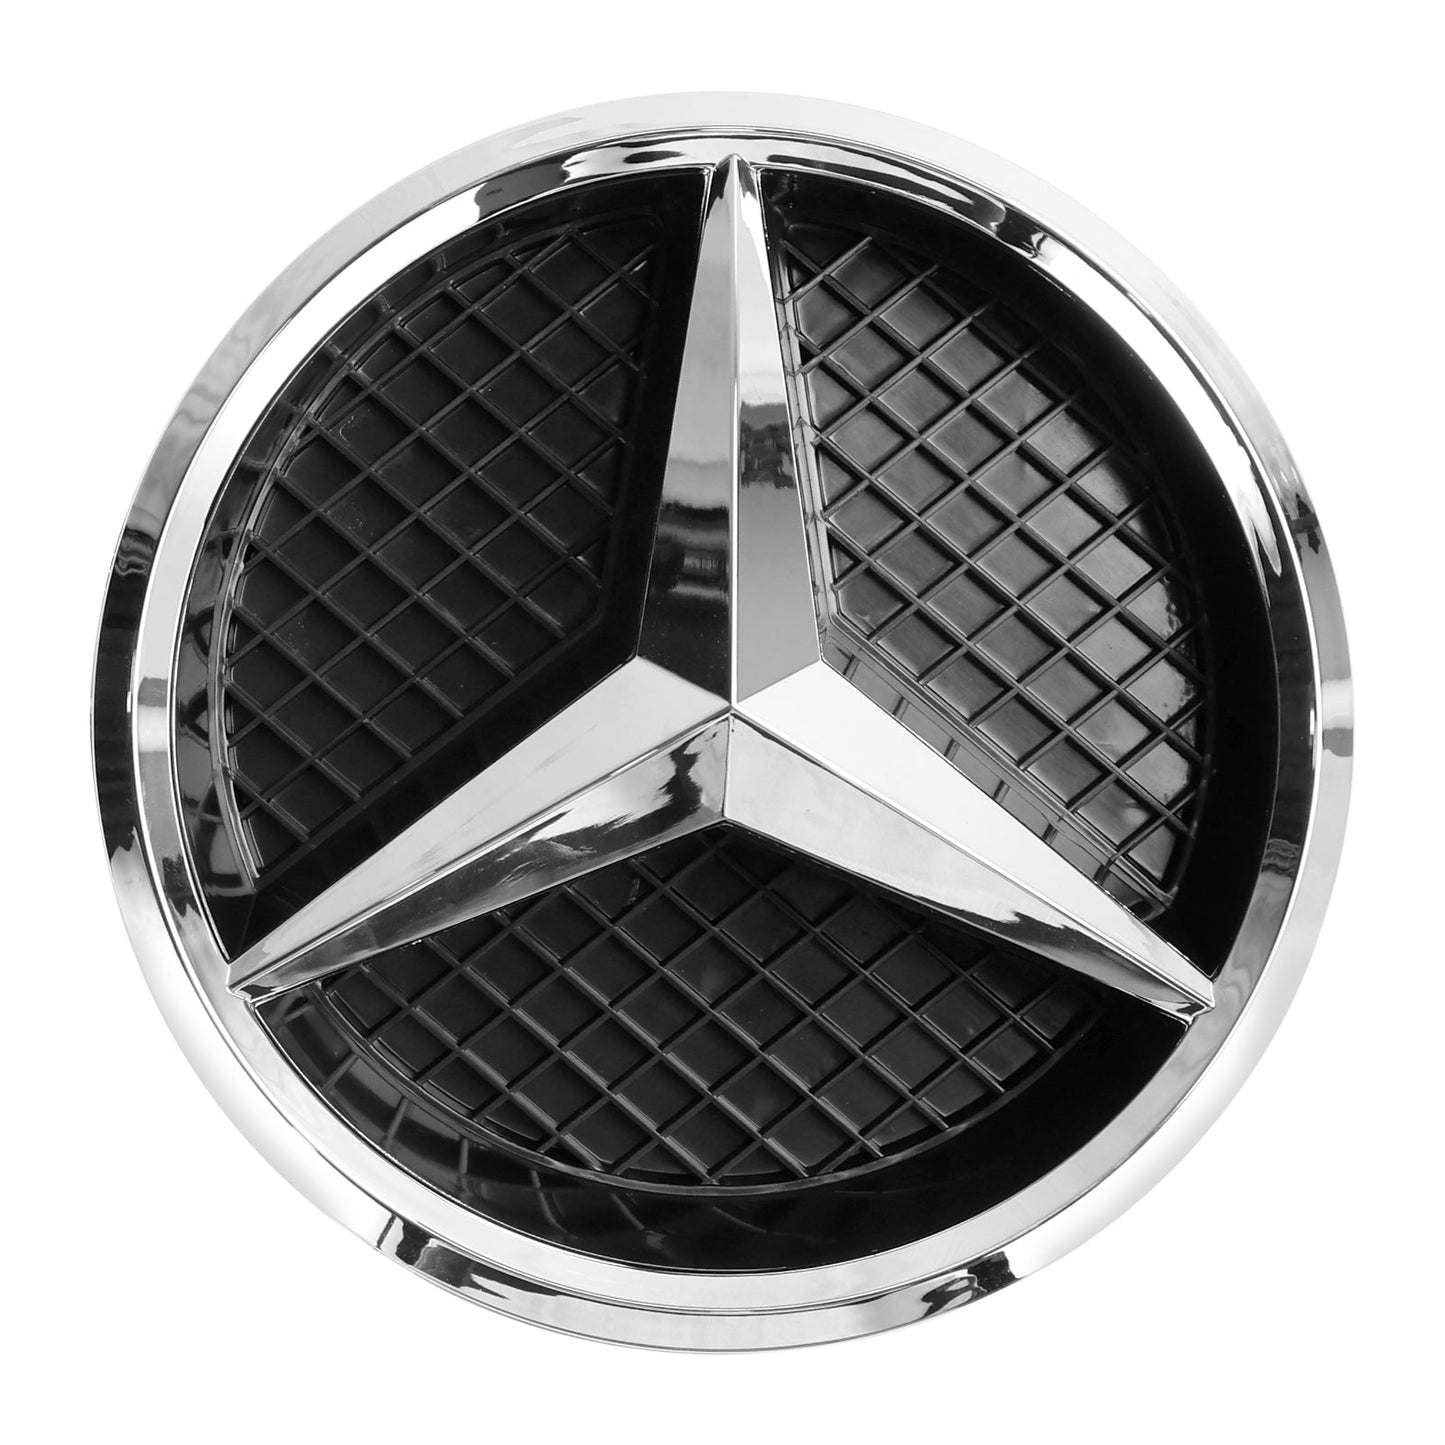 Frontgrill für die Stoßstange, passend für Mercedes Benz GL-Klasse X164 2007–2009, Chrom